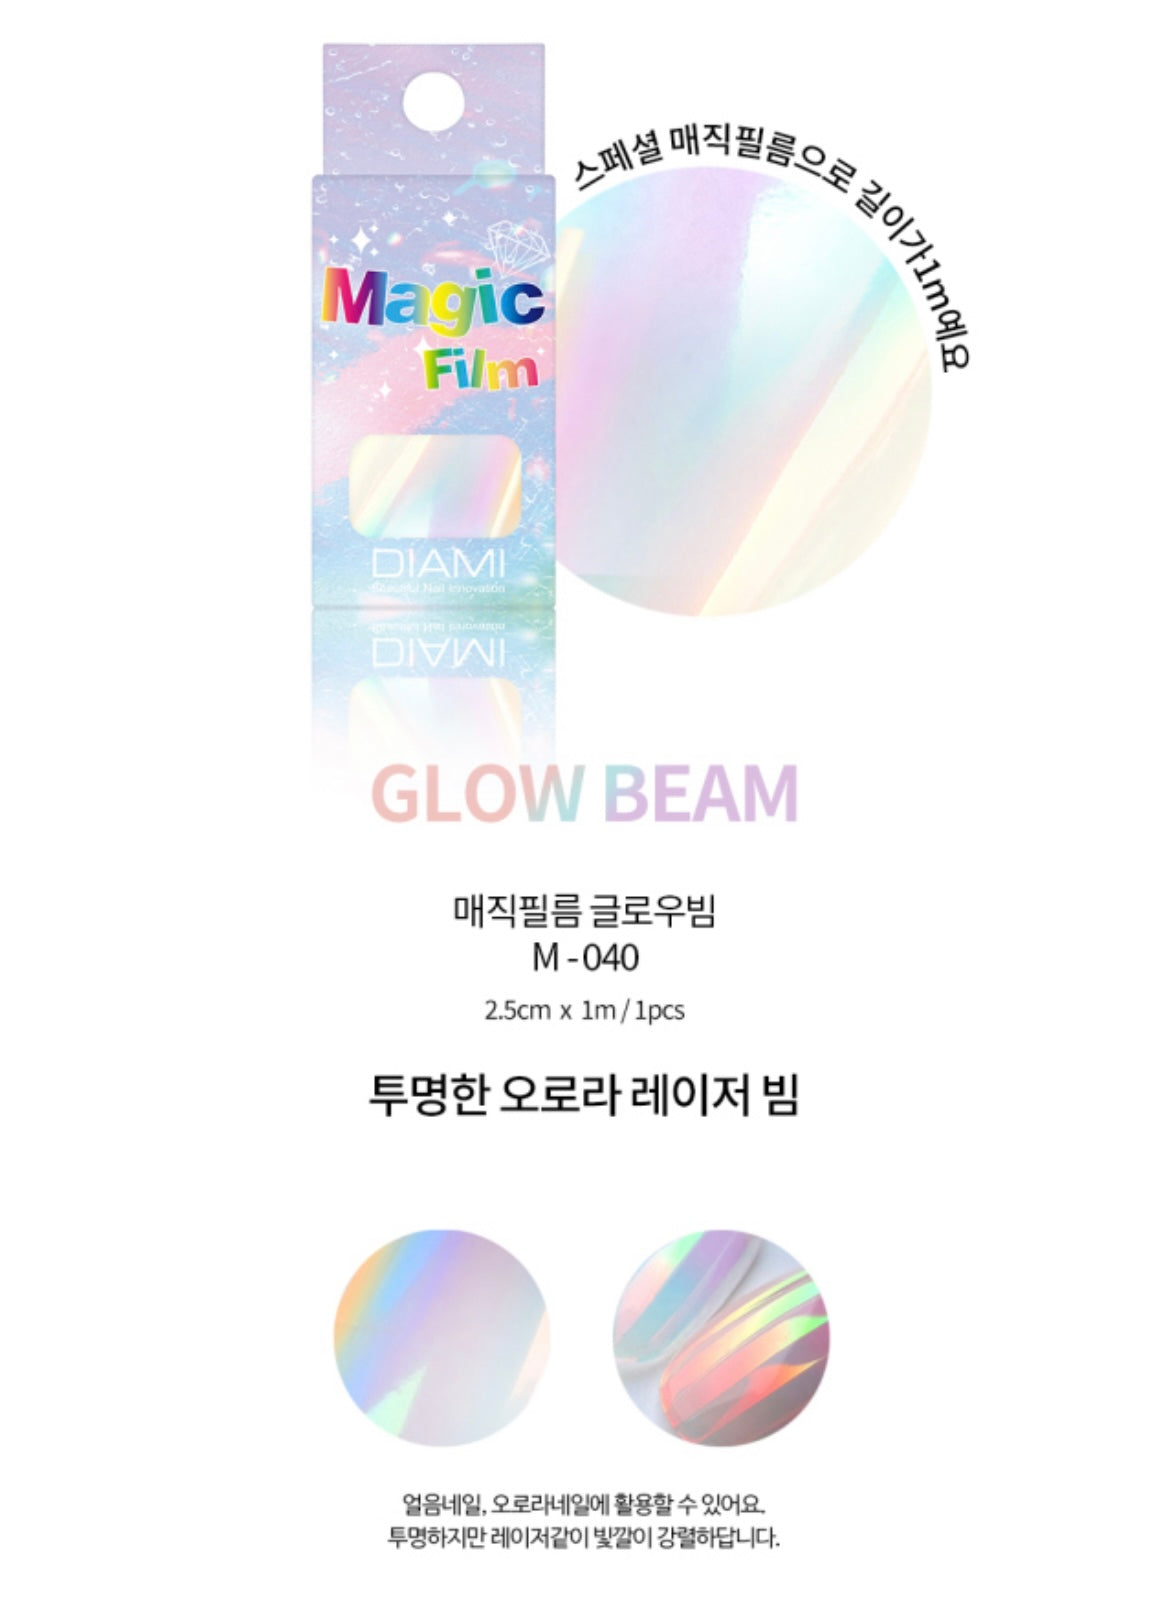 DIAMI Magic film - Glow beam/prism